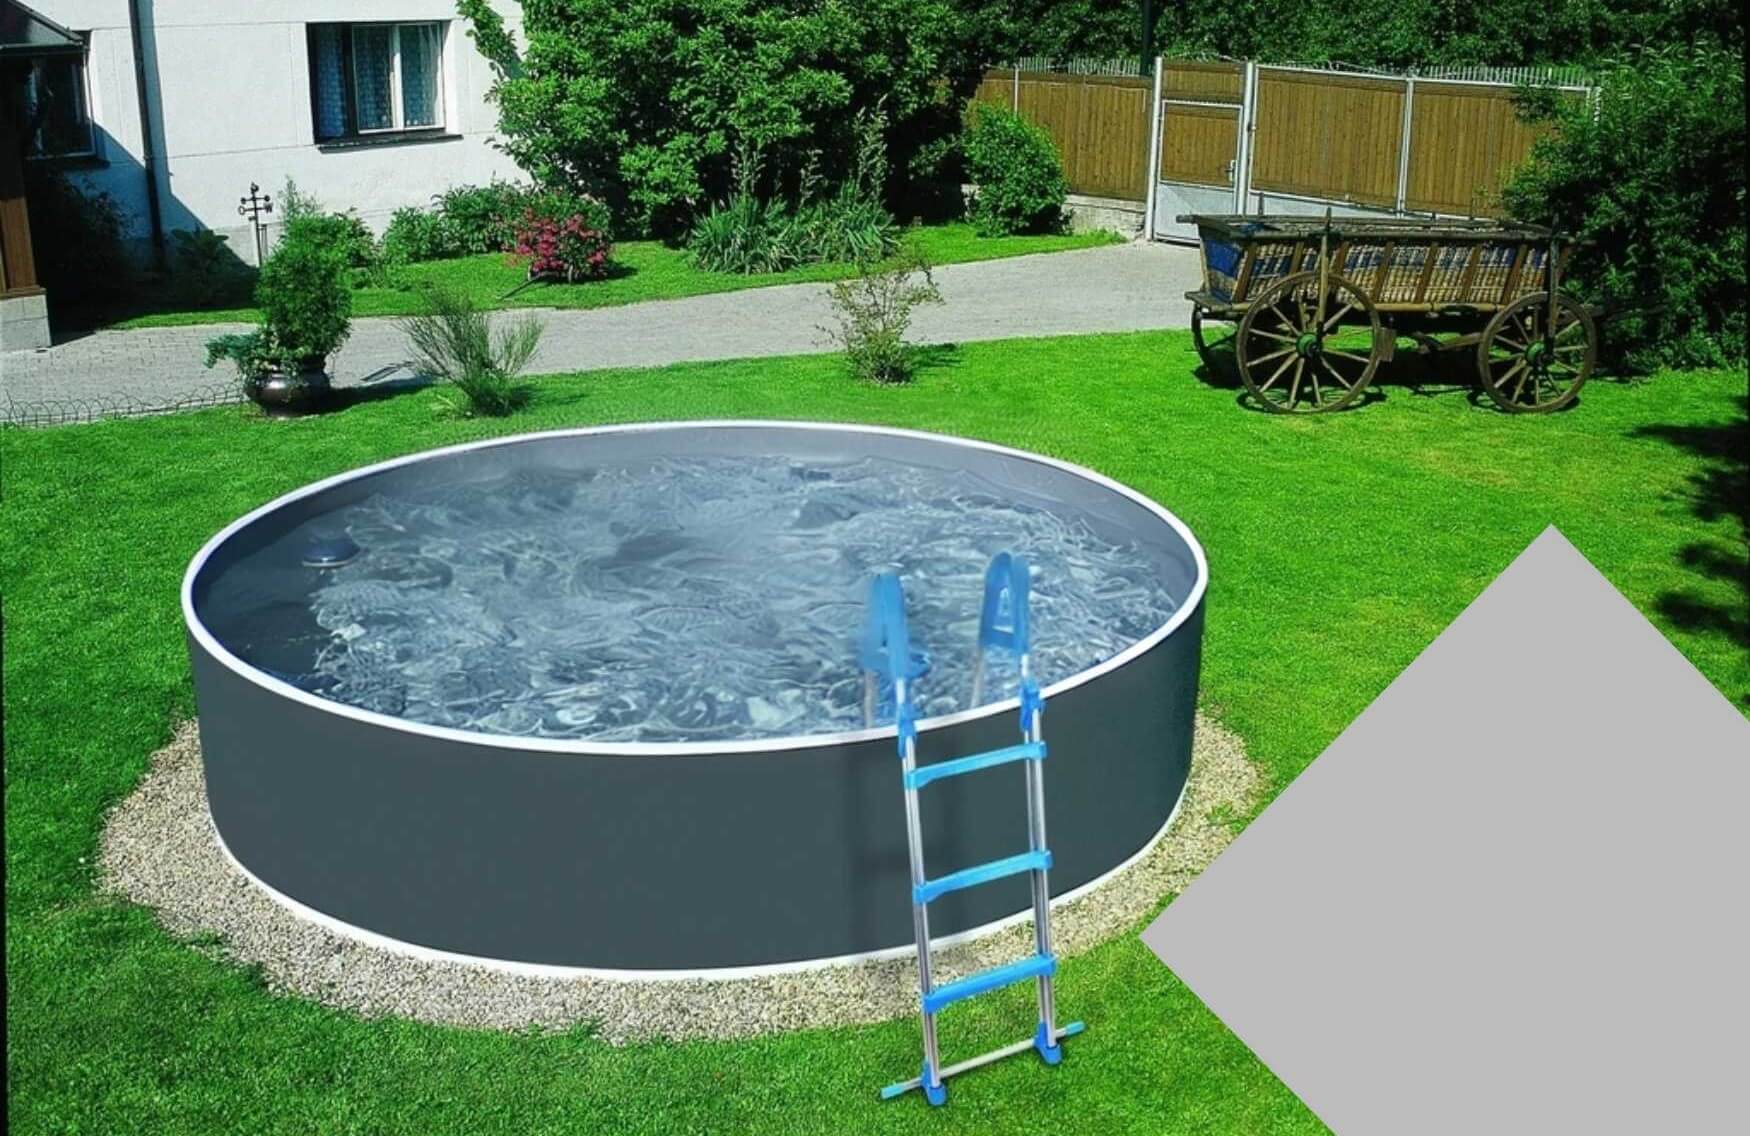 Planet Pool Náhradní bazénová fólie Grey pro bazén 5,5 m x 3,7 m x 1,2 m